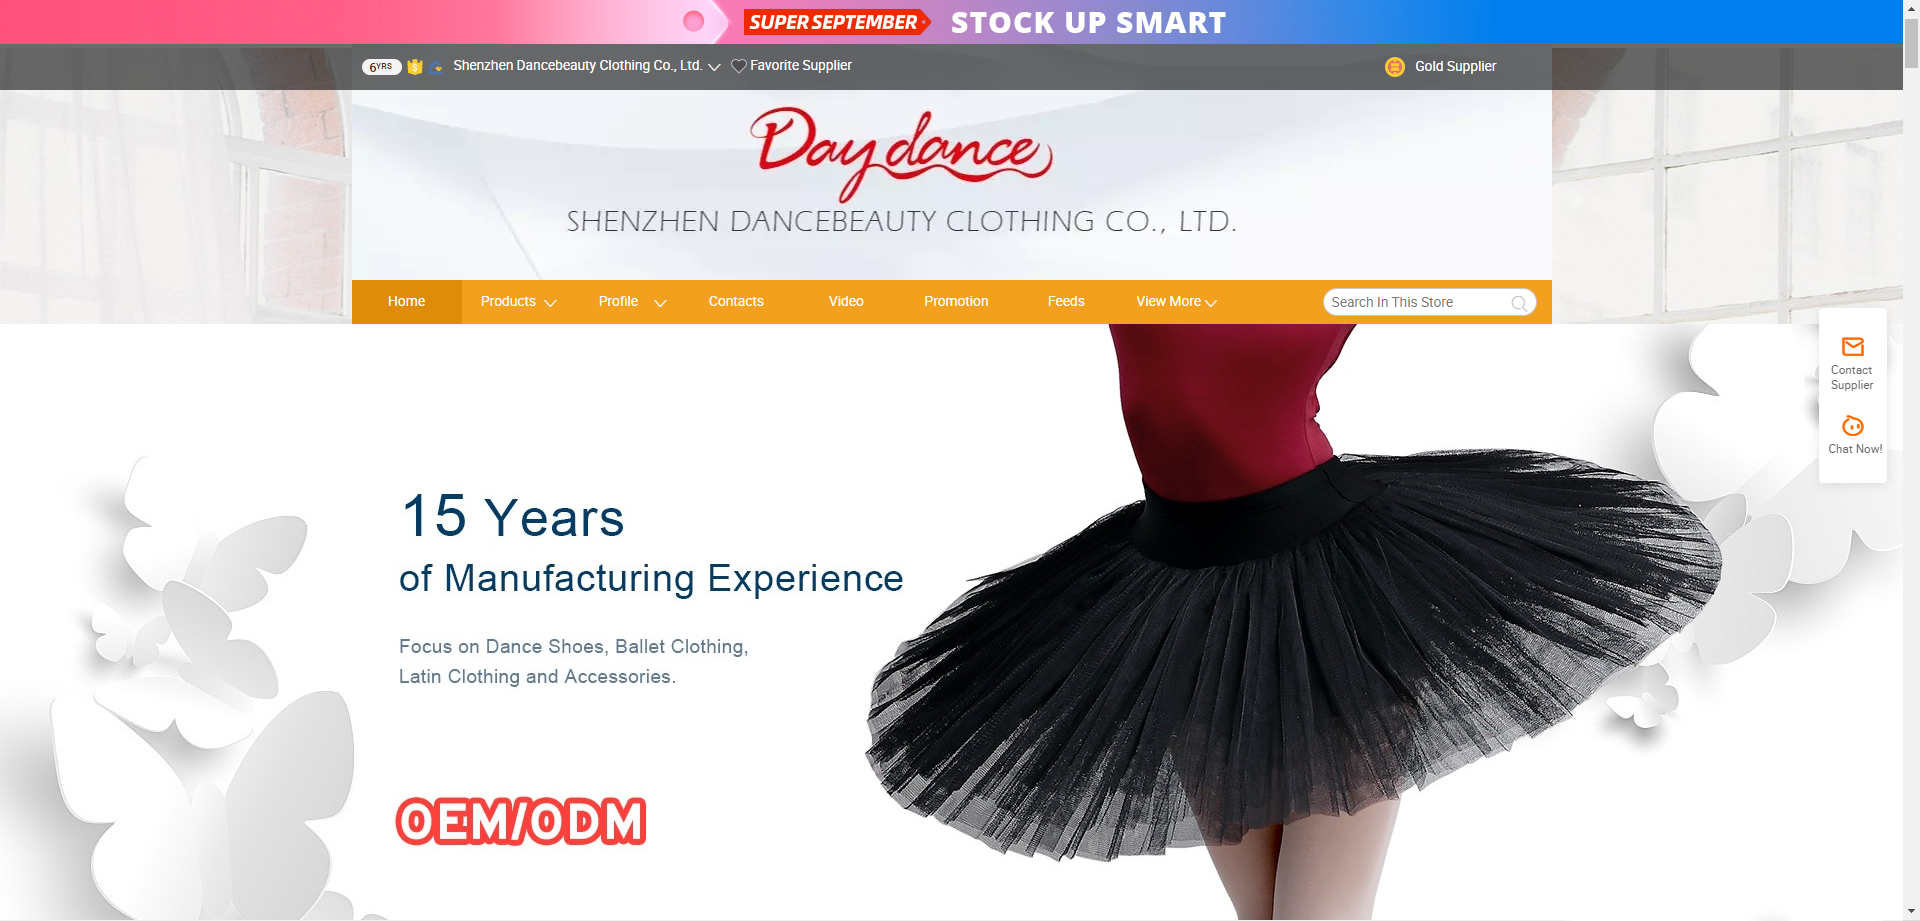 Shenzhen Dancebeauty Clothing Co